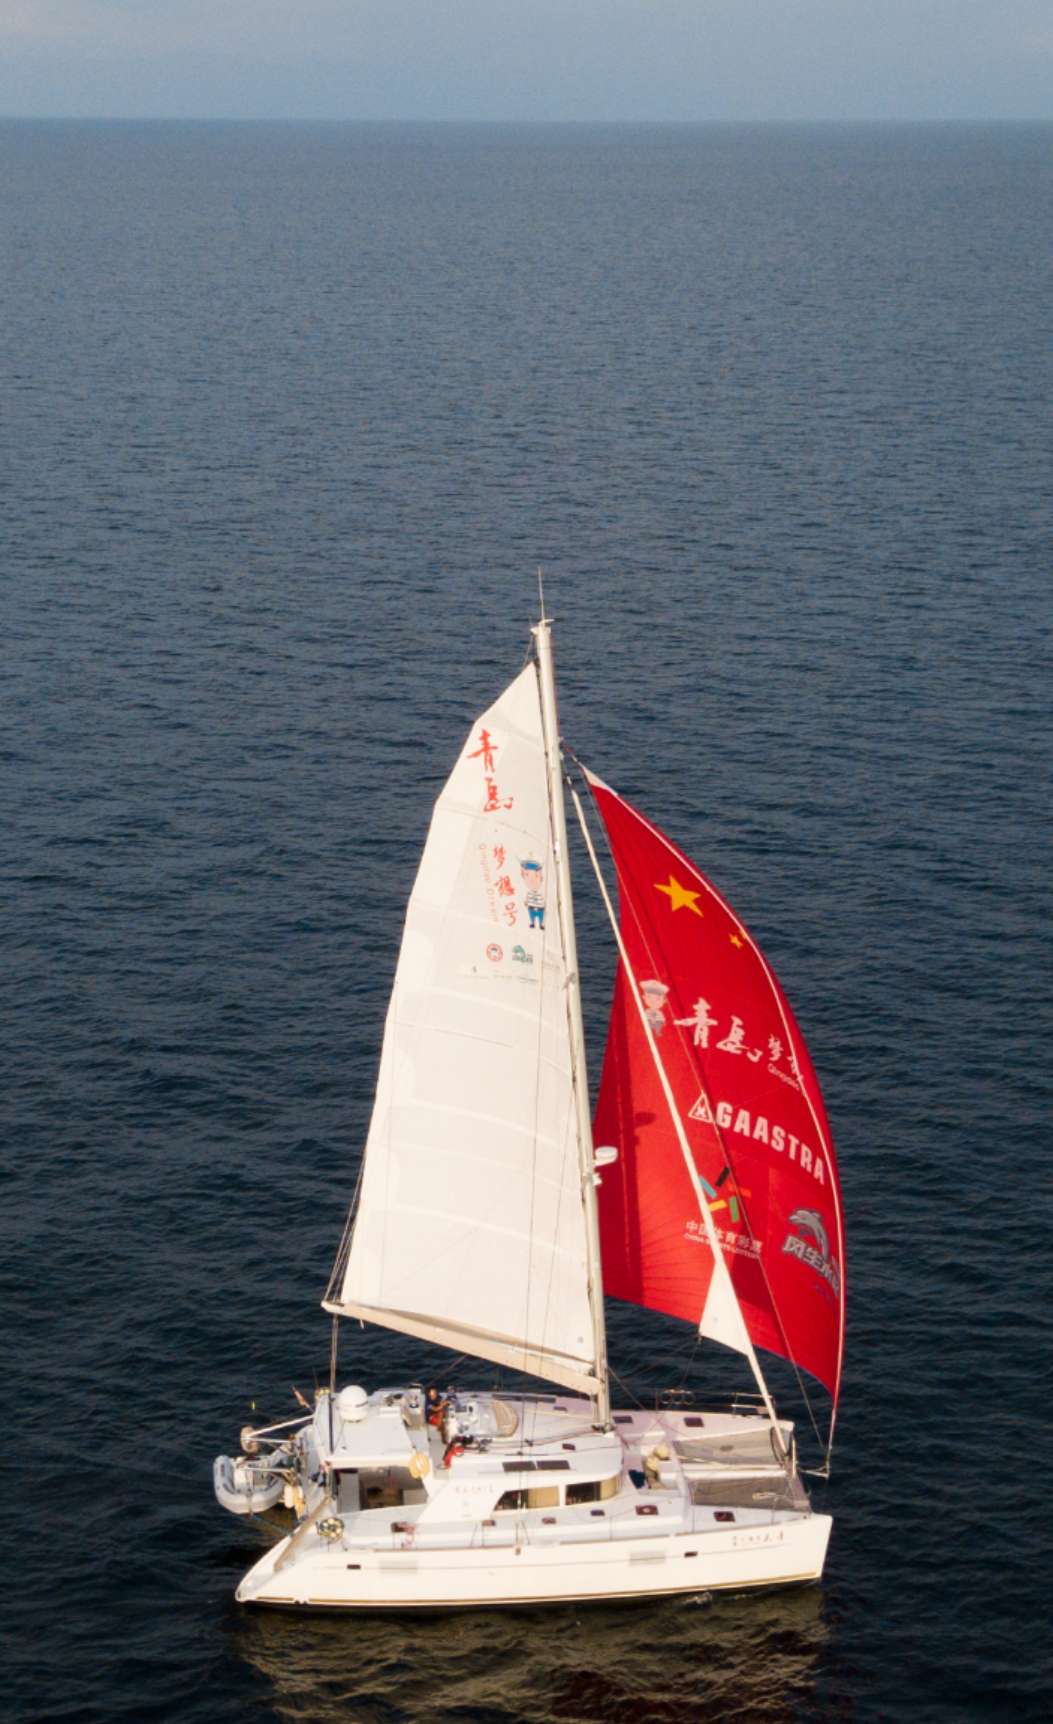 英雄船长徐京坤即将凯旋归来 青岛梦想号 双体帆船圆满完成环球航行